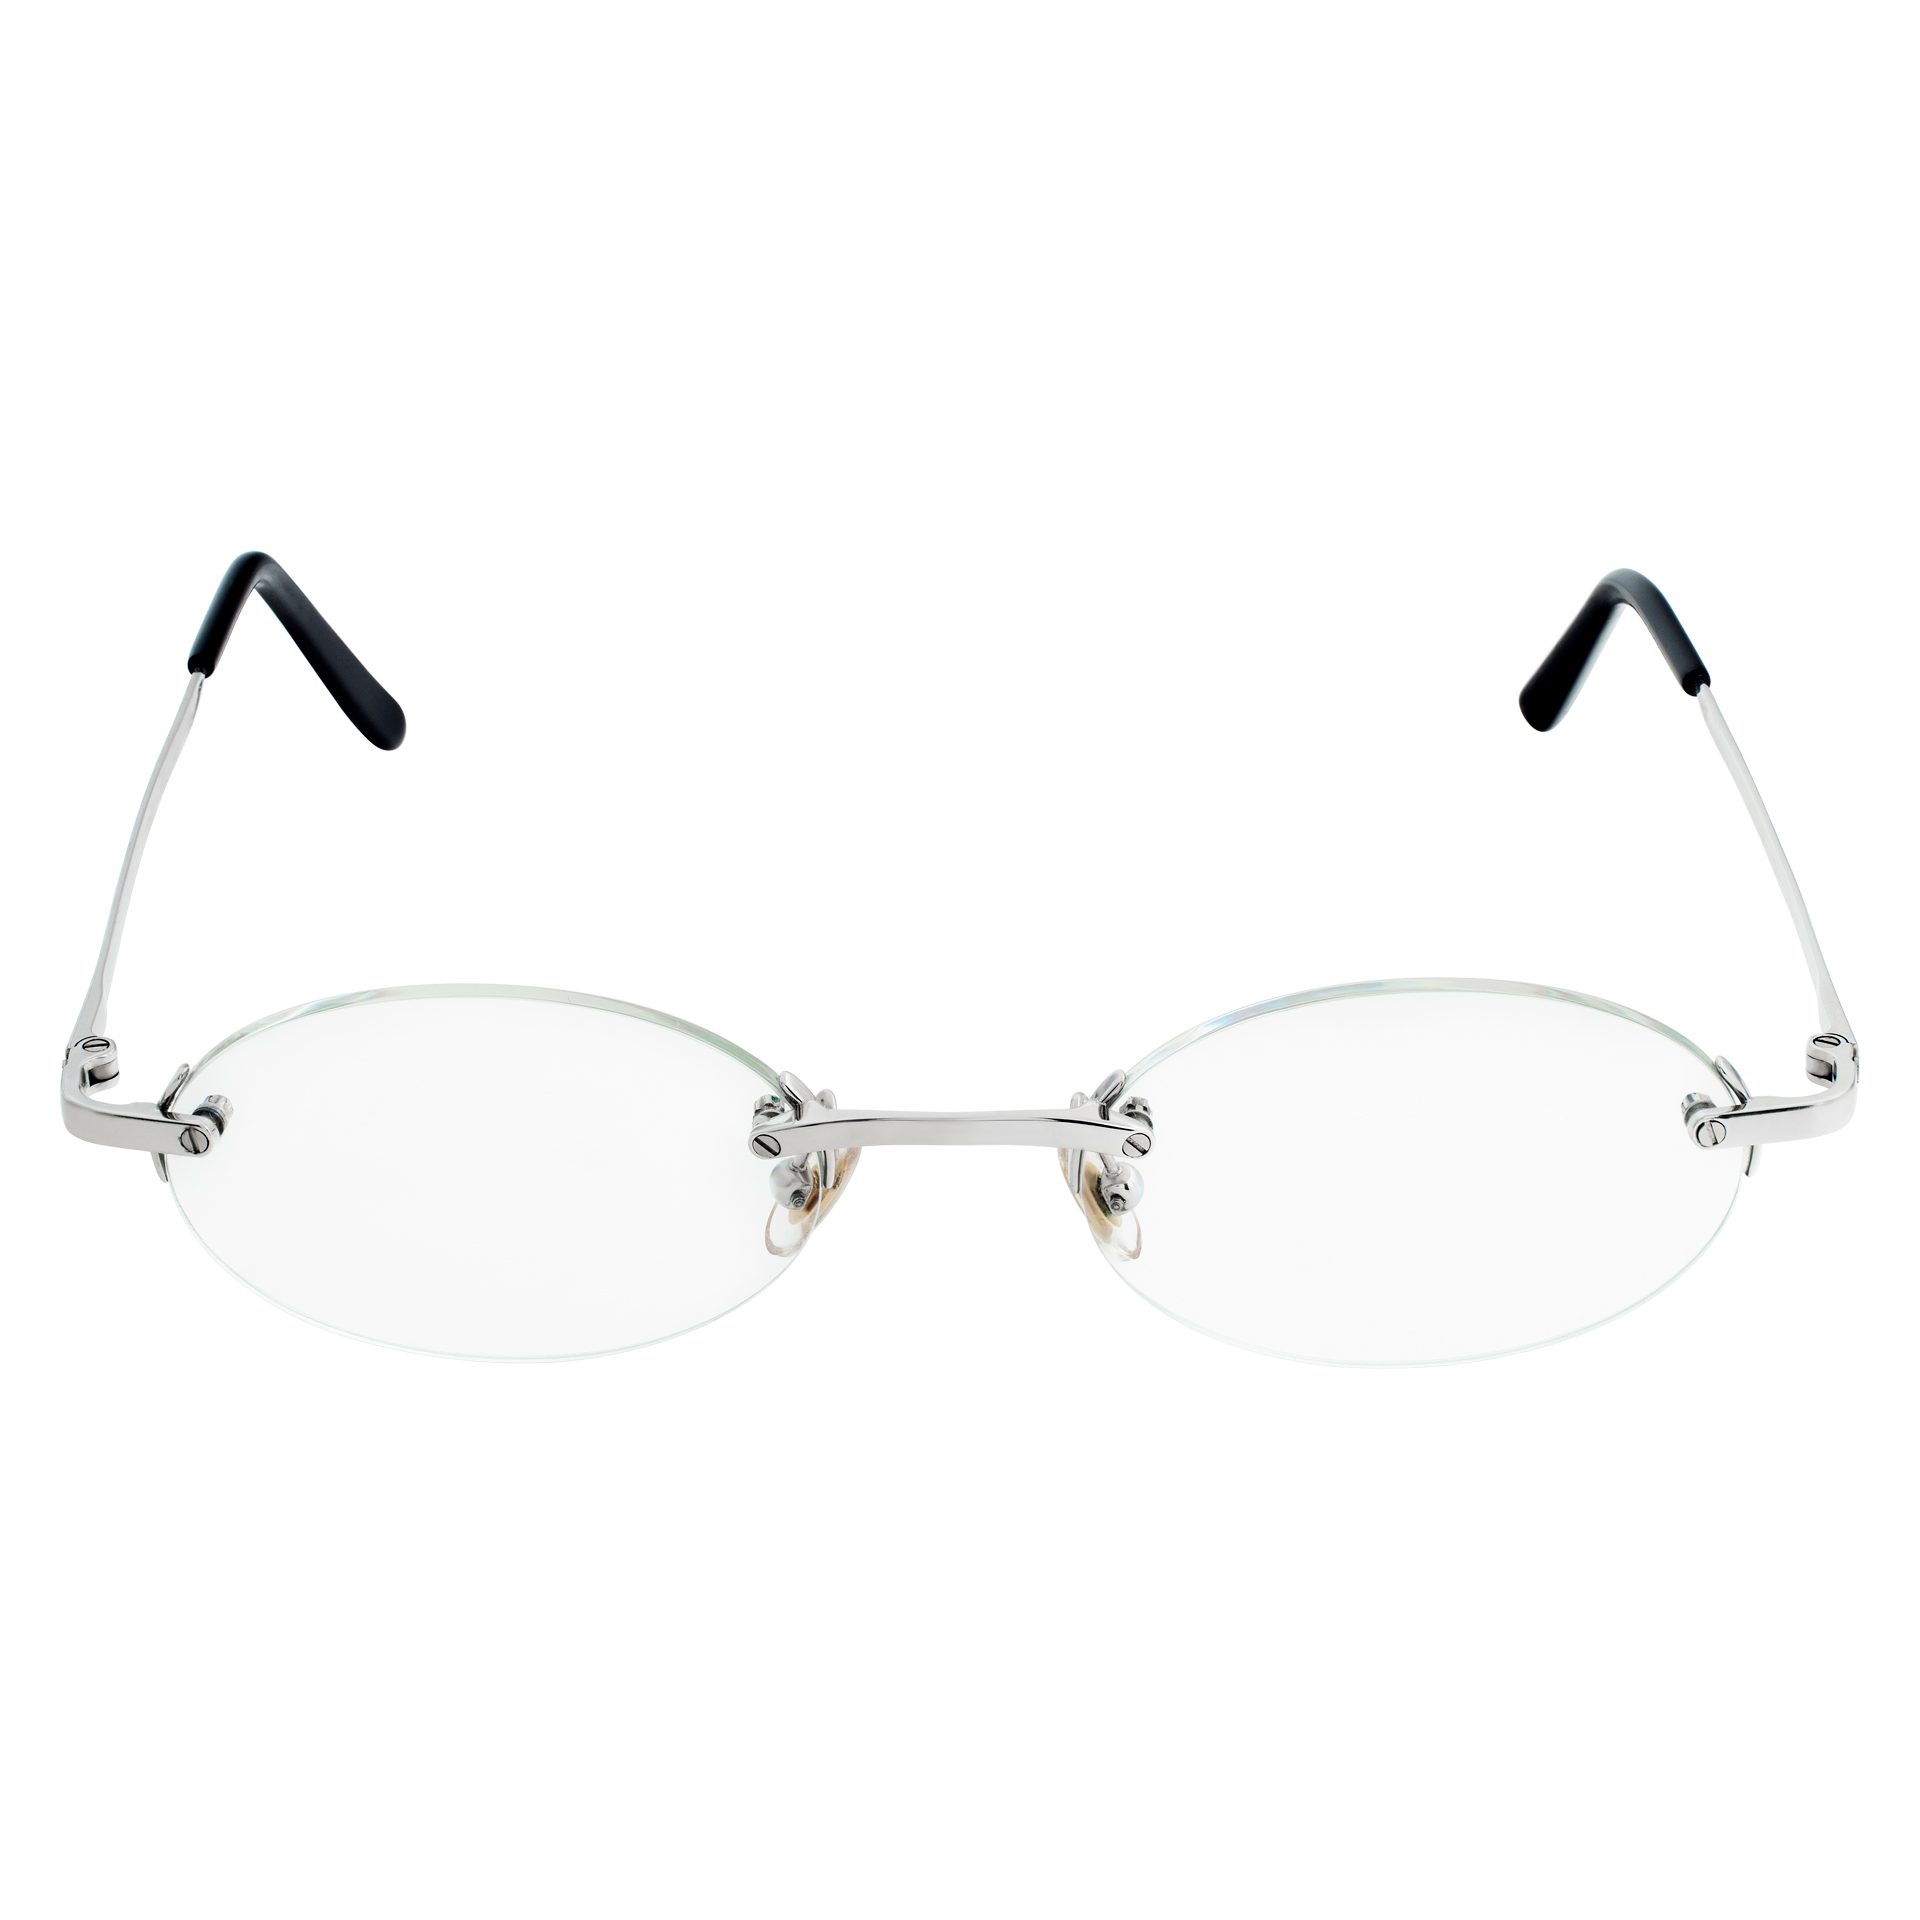 Cartier rimless eyeglasses in titanium image 1